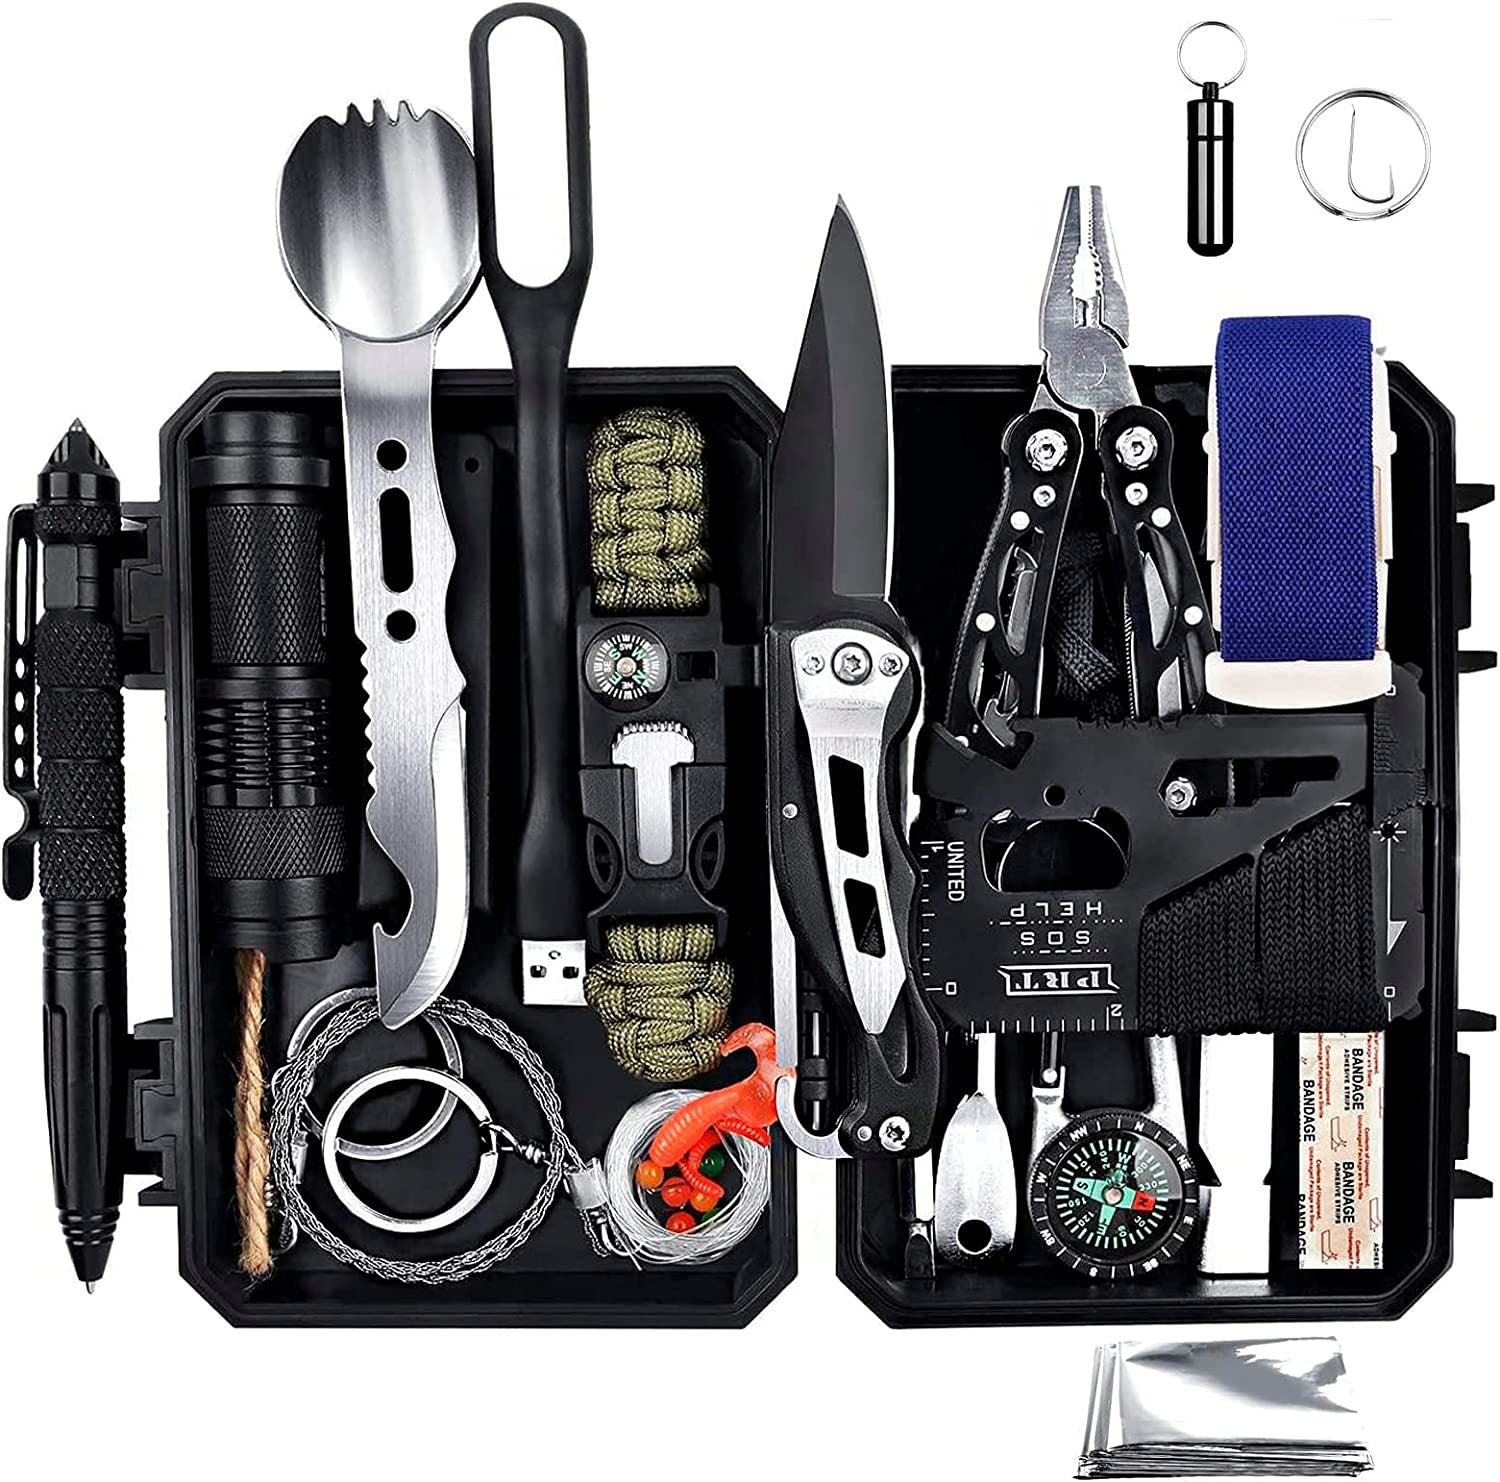 Survival Equipment Kit, Gift for Him